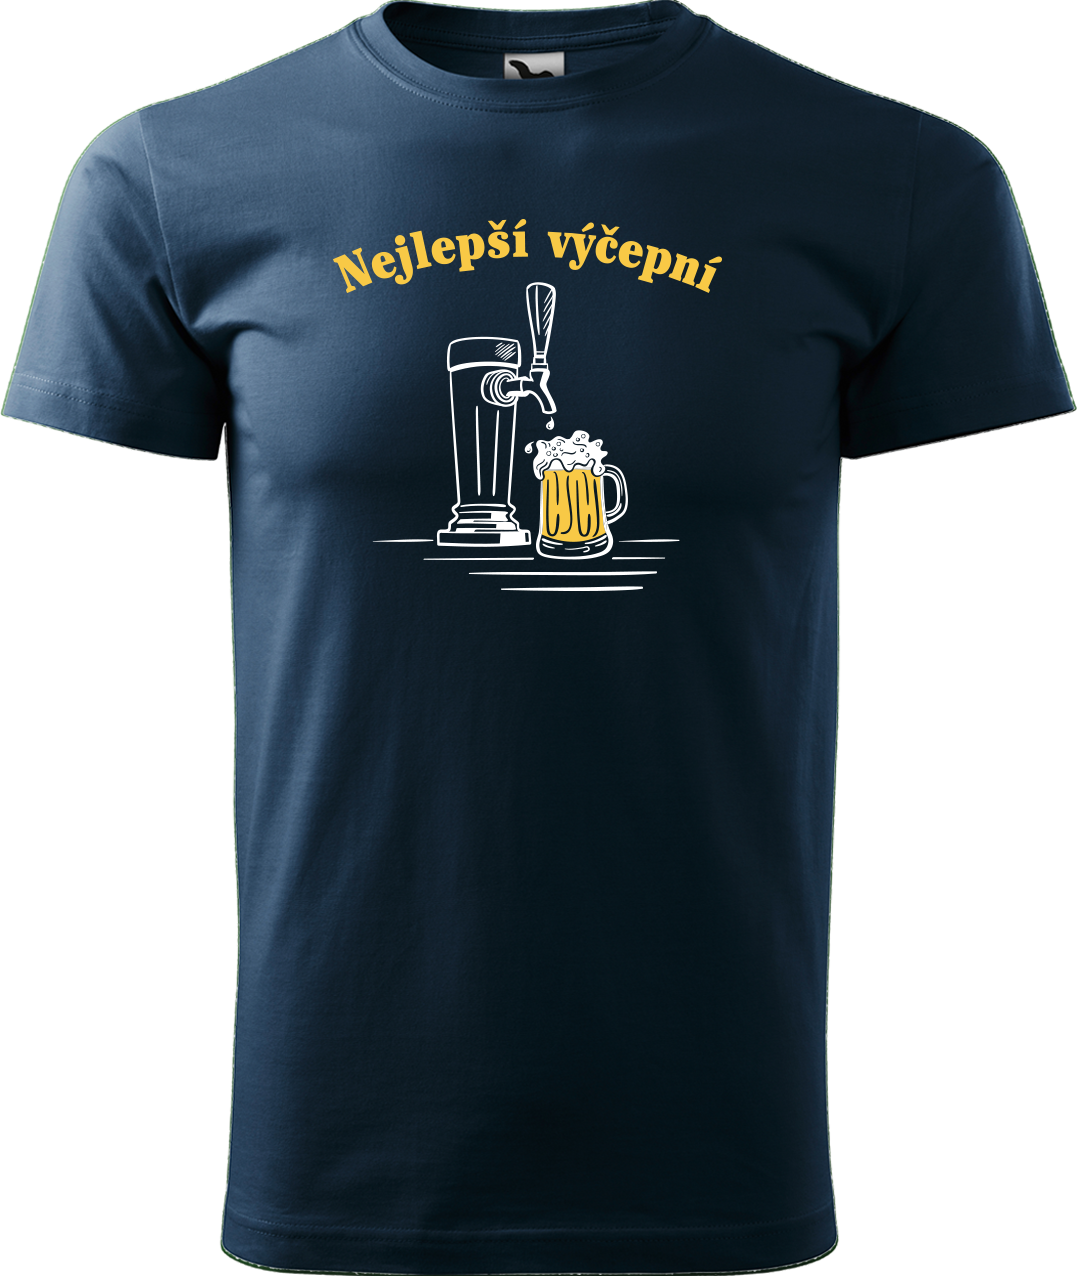 Pivní tričko - Nejlepší výčepní Velikost: M, Barva: Námořní modrá (02)